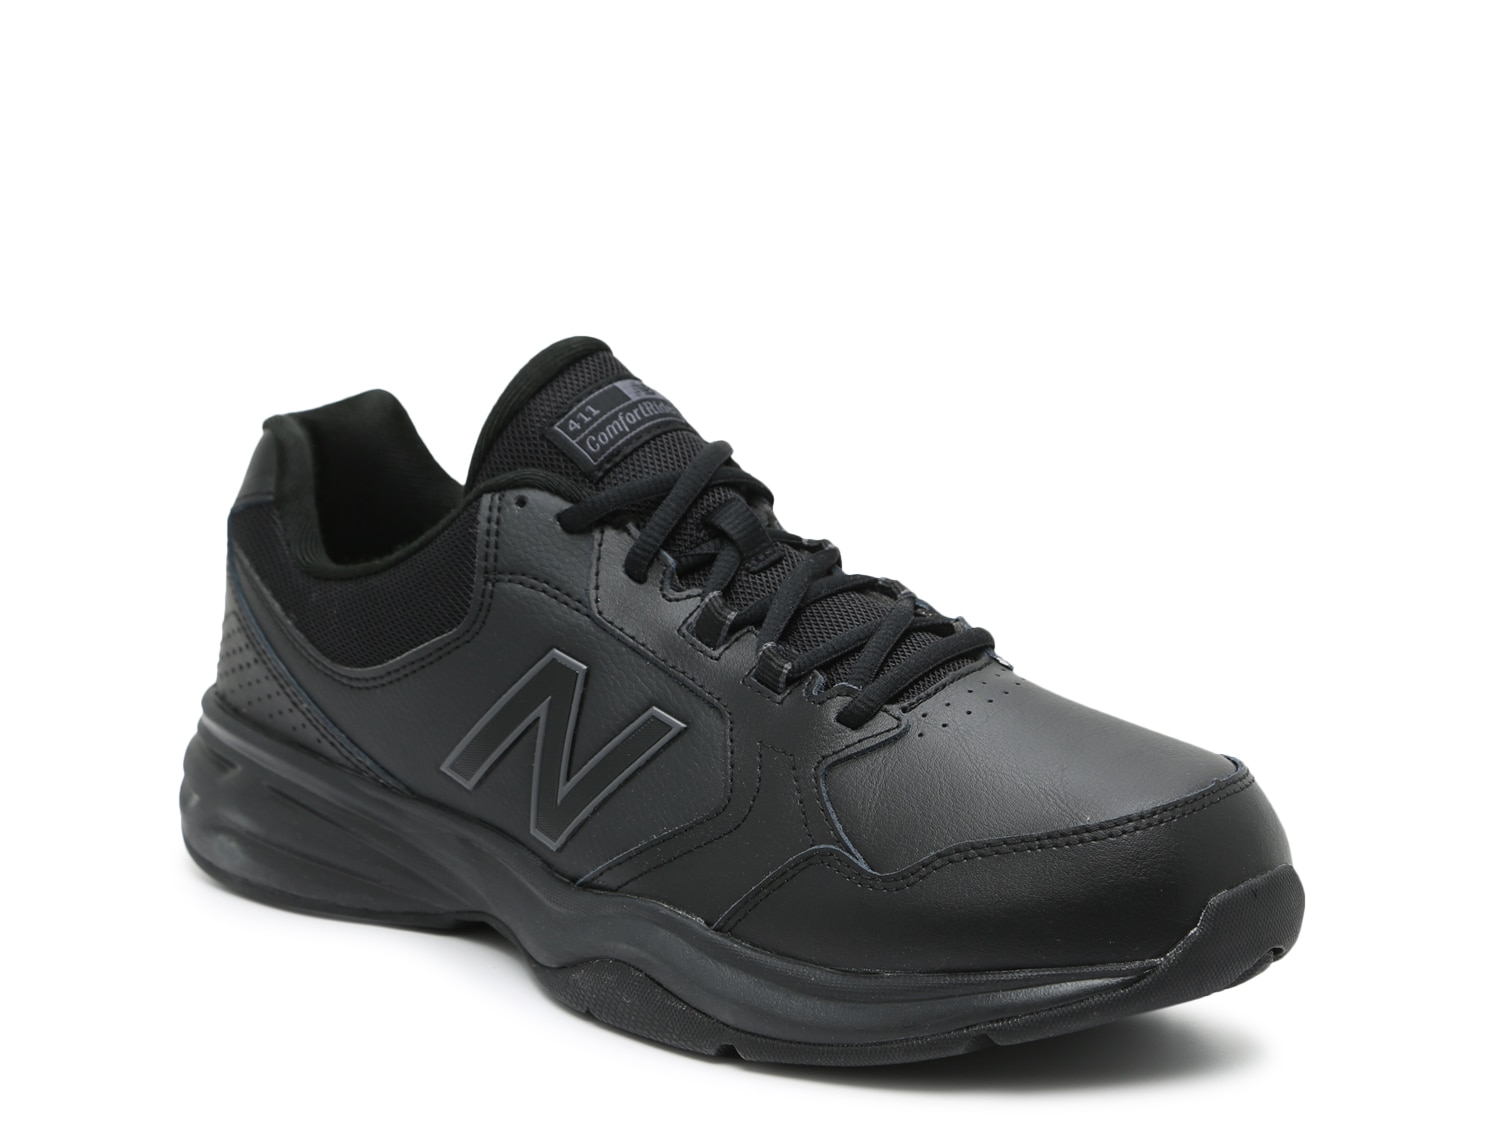 New Balance 411 Walking Shoe - Men's | DSW